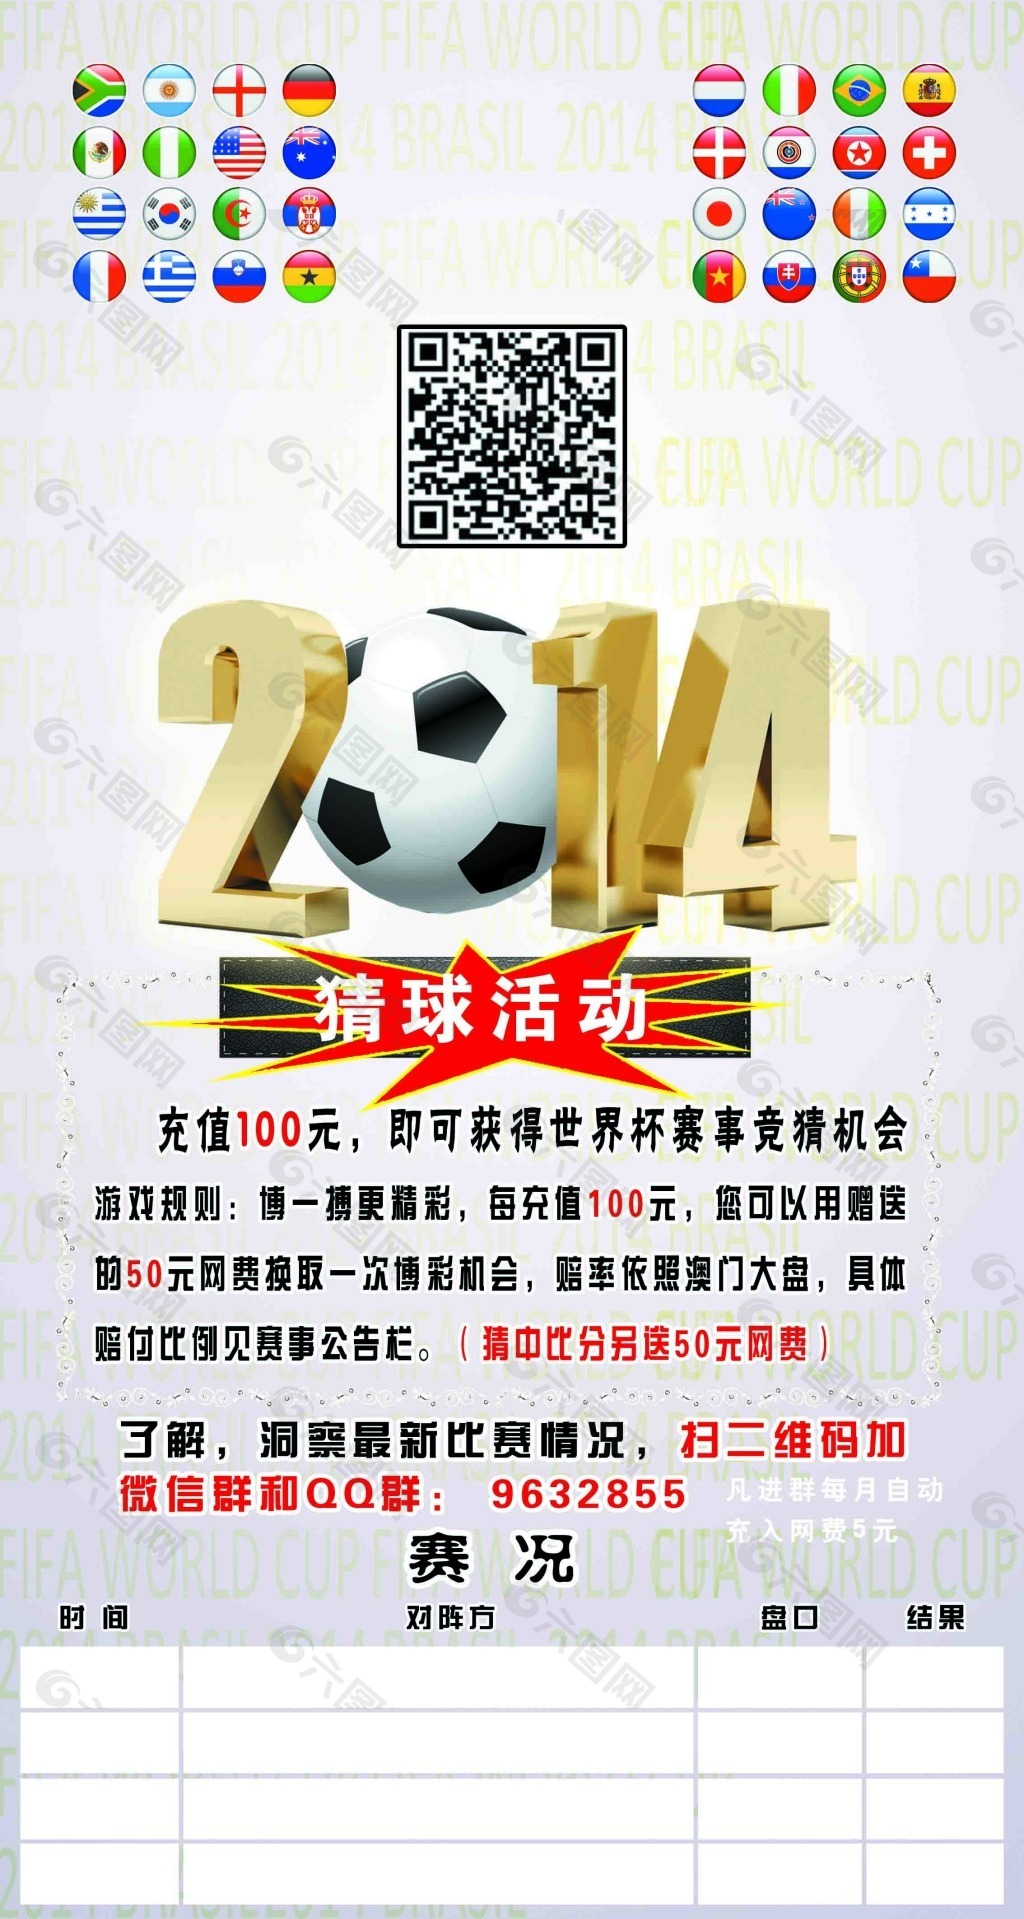 2014世界杯足球猜球活动板